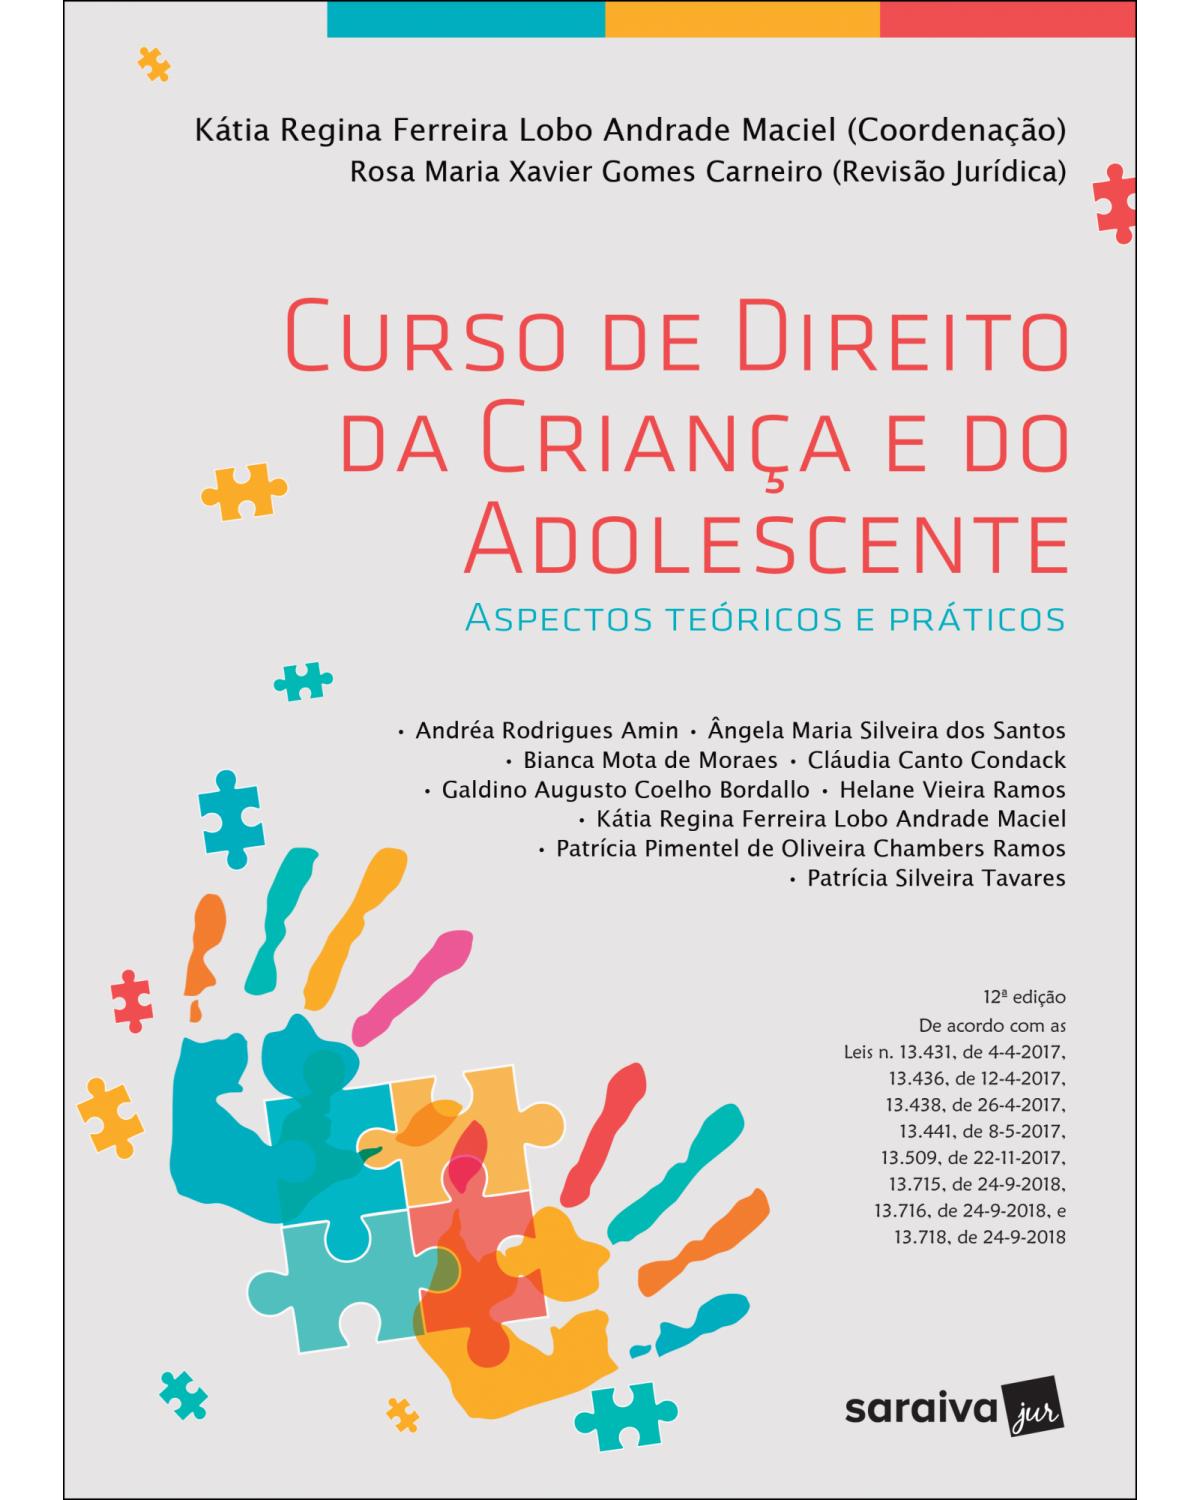 Curso de direito da criança e do adolescente - aspectos teóricos e práticos - 12ª Edição | 2018